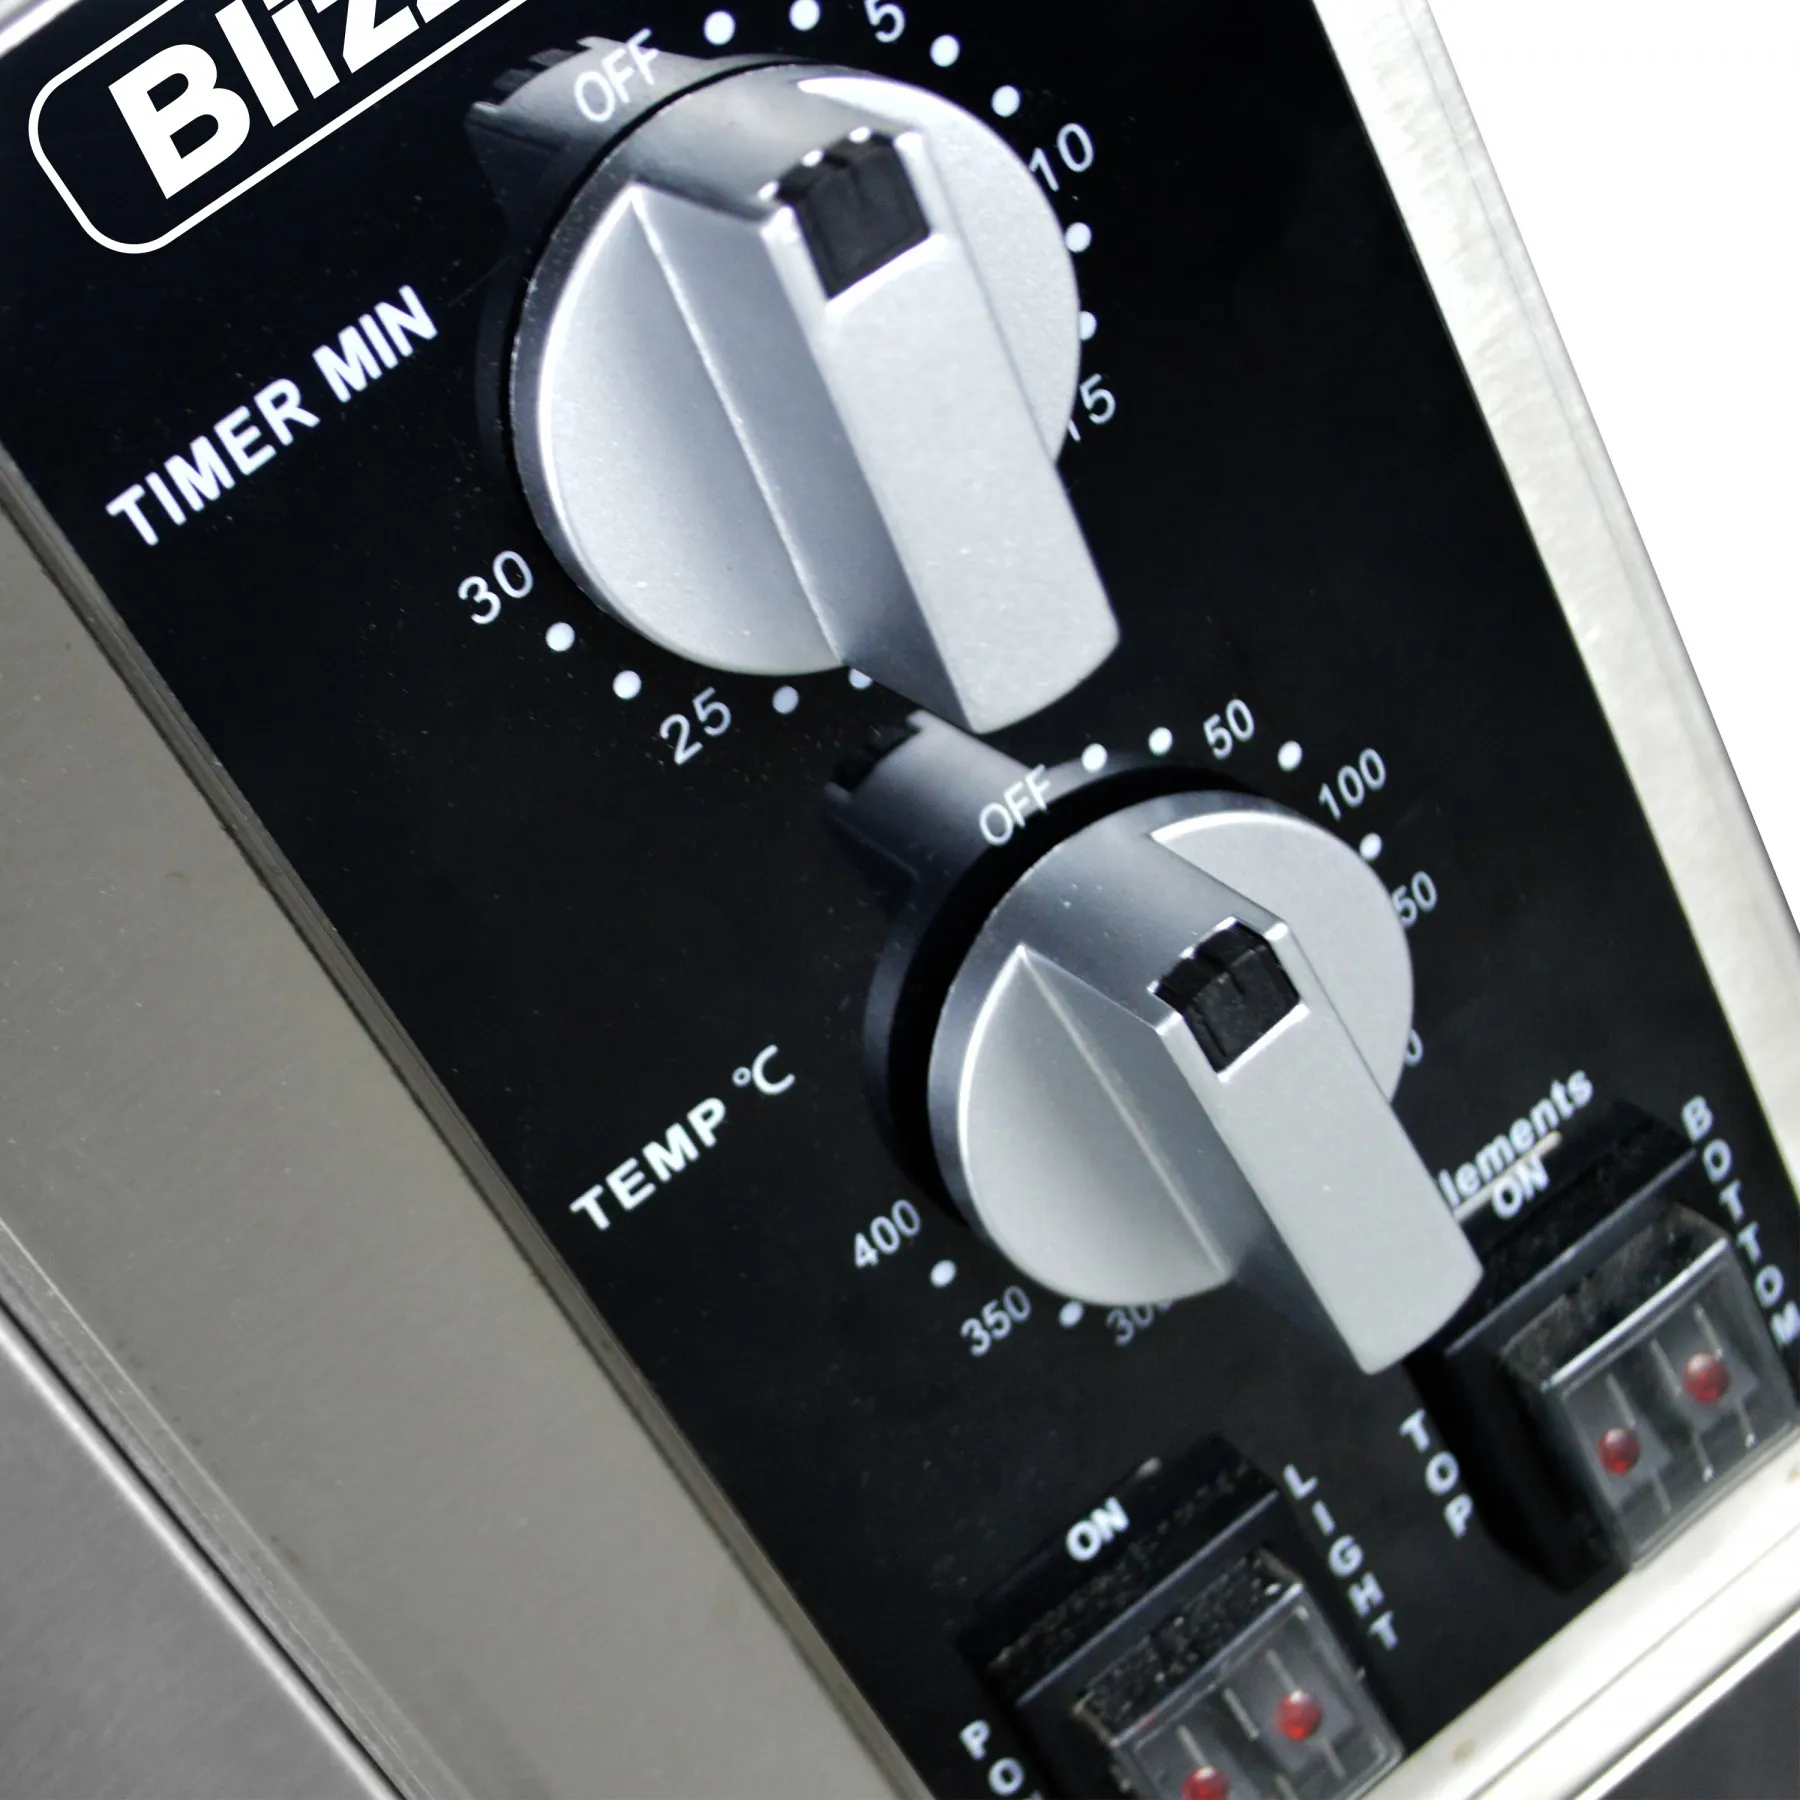 Blizzard BPO1 Single Deck Pizza Oven